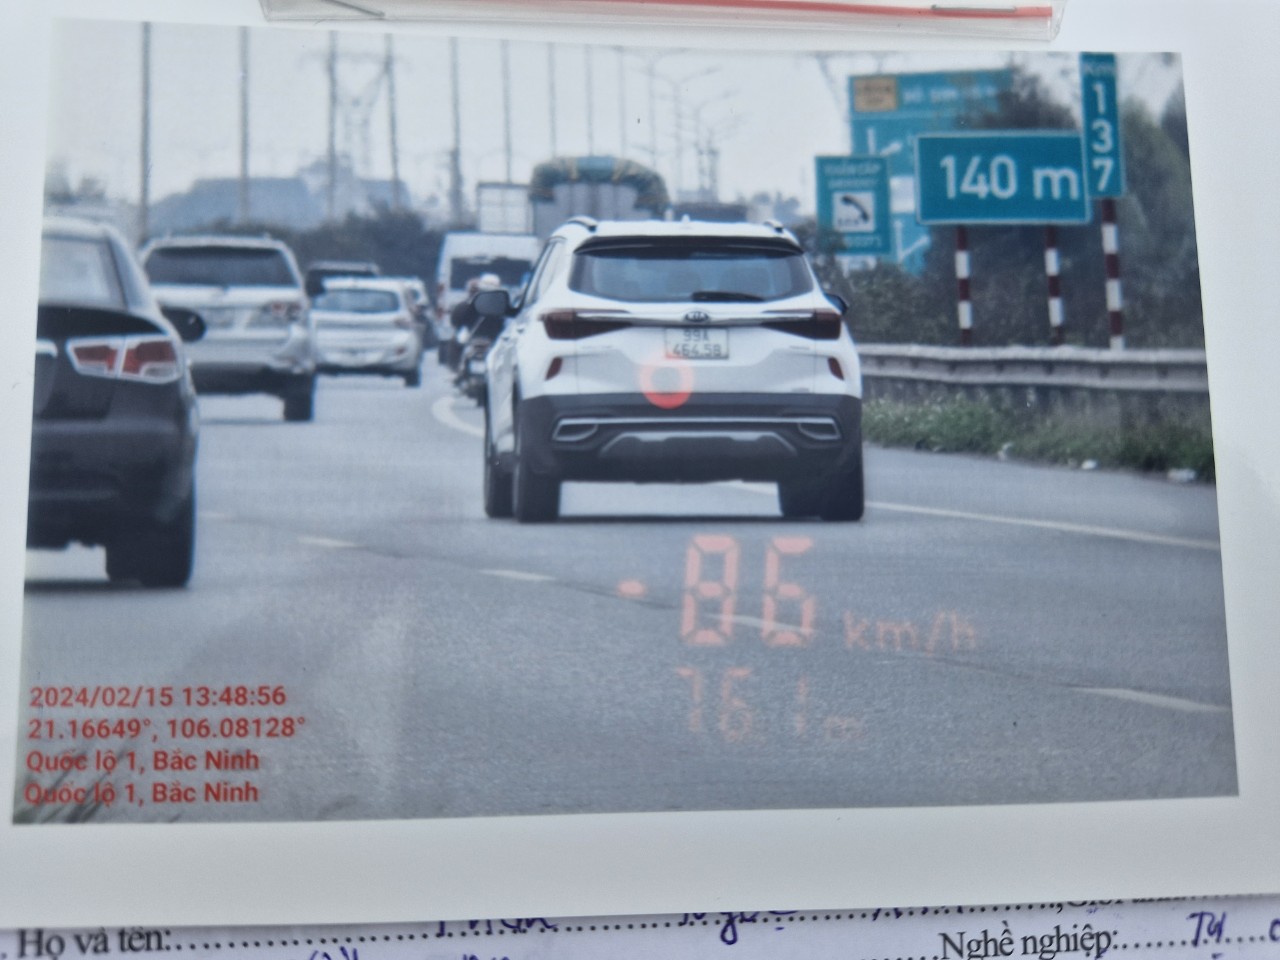 Hàng trăm tài xế vi phạm tốc độ vì nhầm QL1 qua Bắc Ninh là... cao tốc- Ảnh 3.